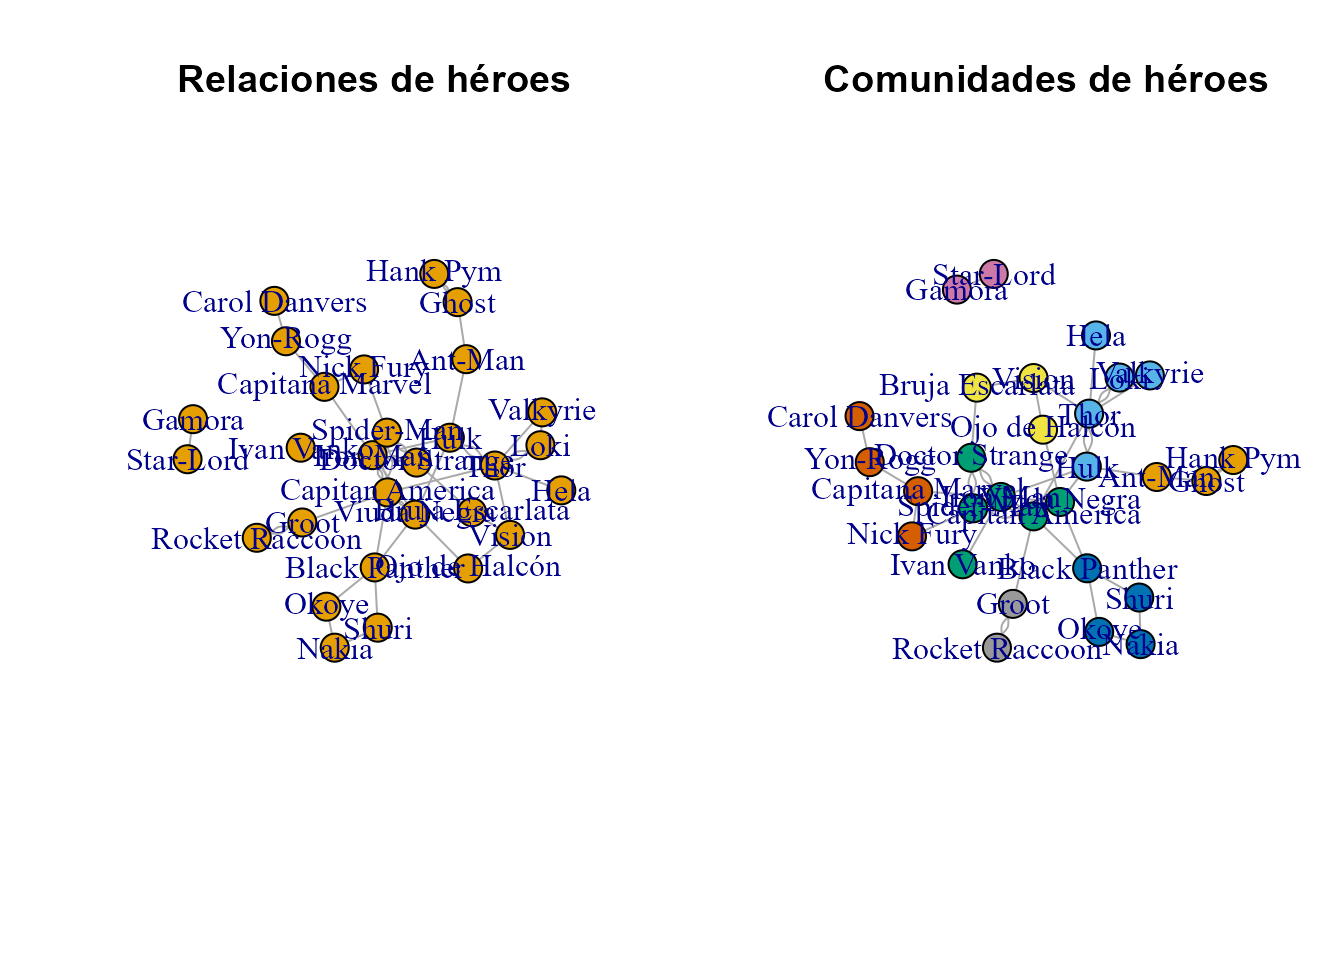 Grafo de relaciones y comunidades de héroes.